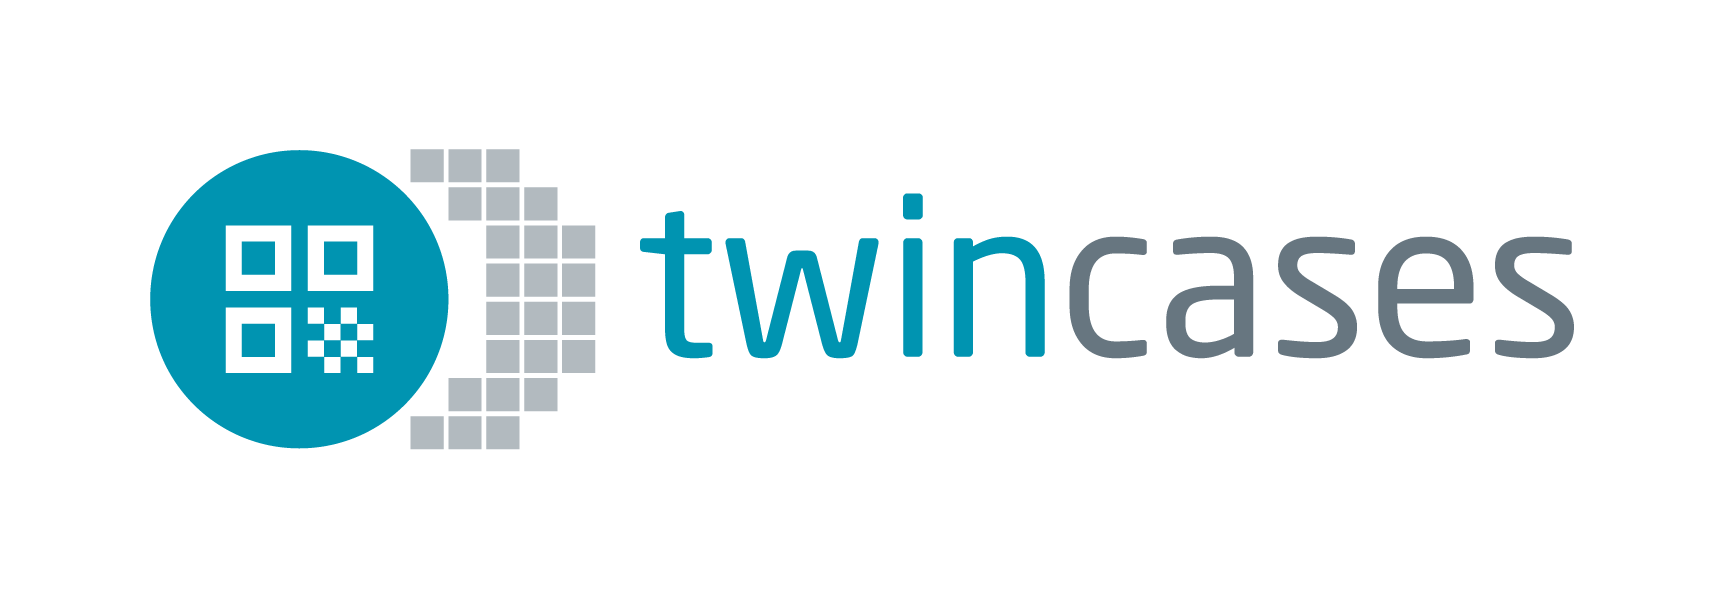 twincases logo Kreis mit Schatten